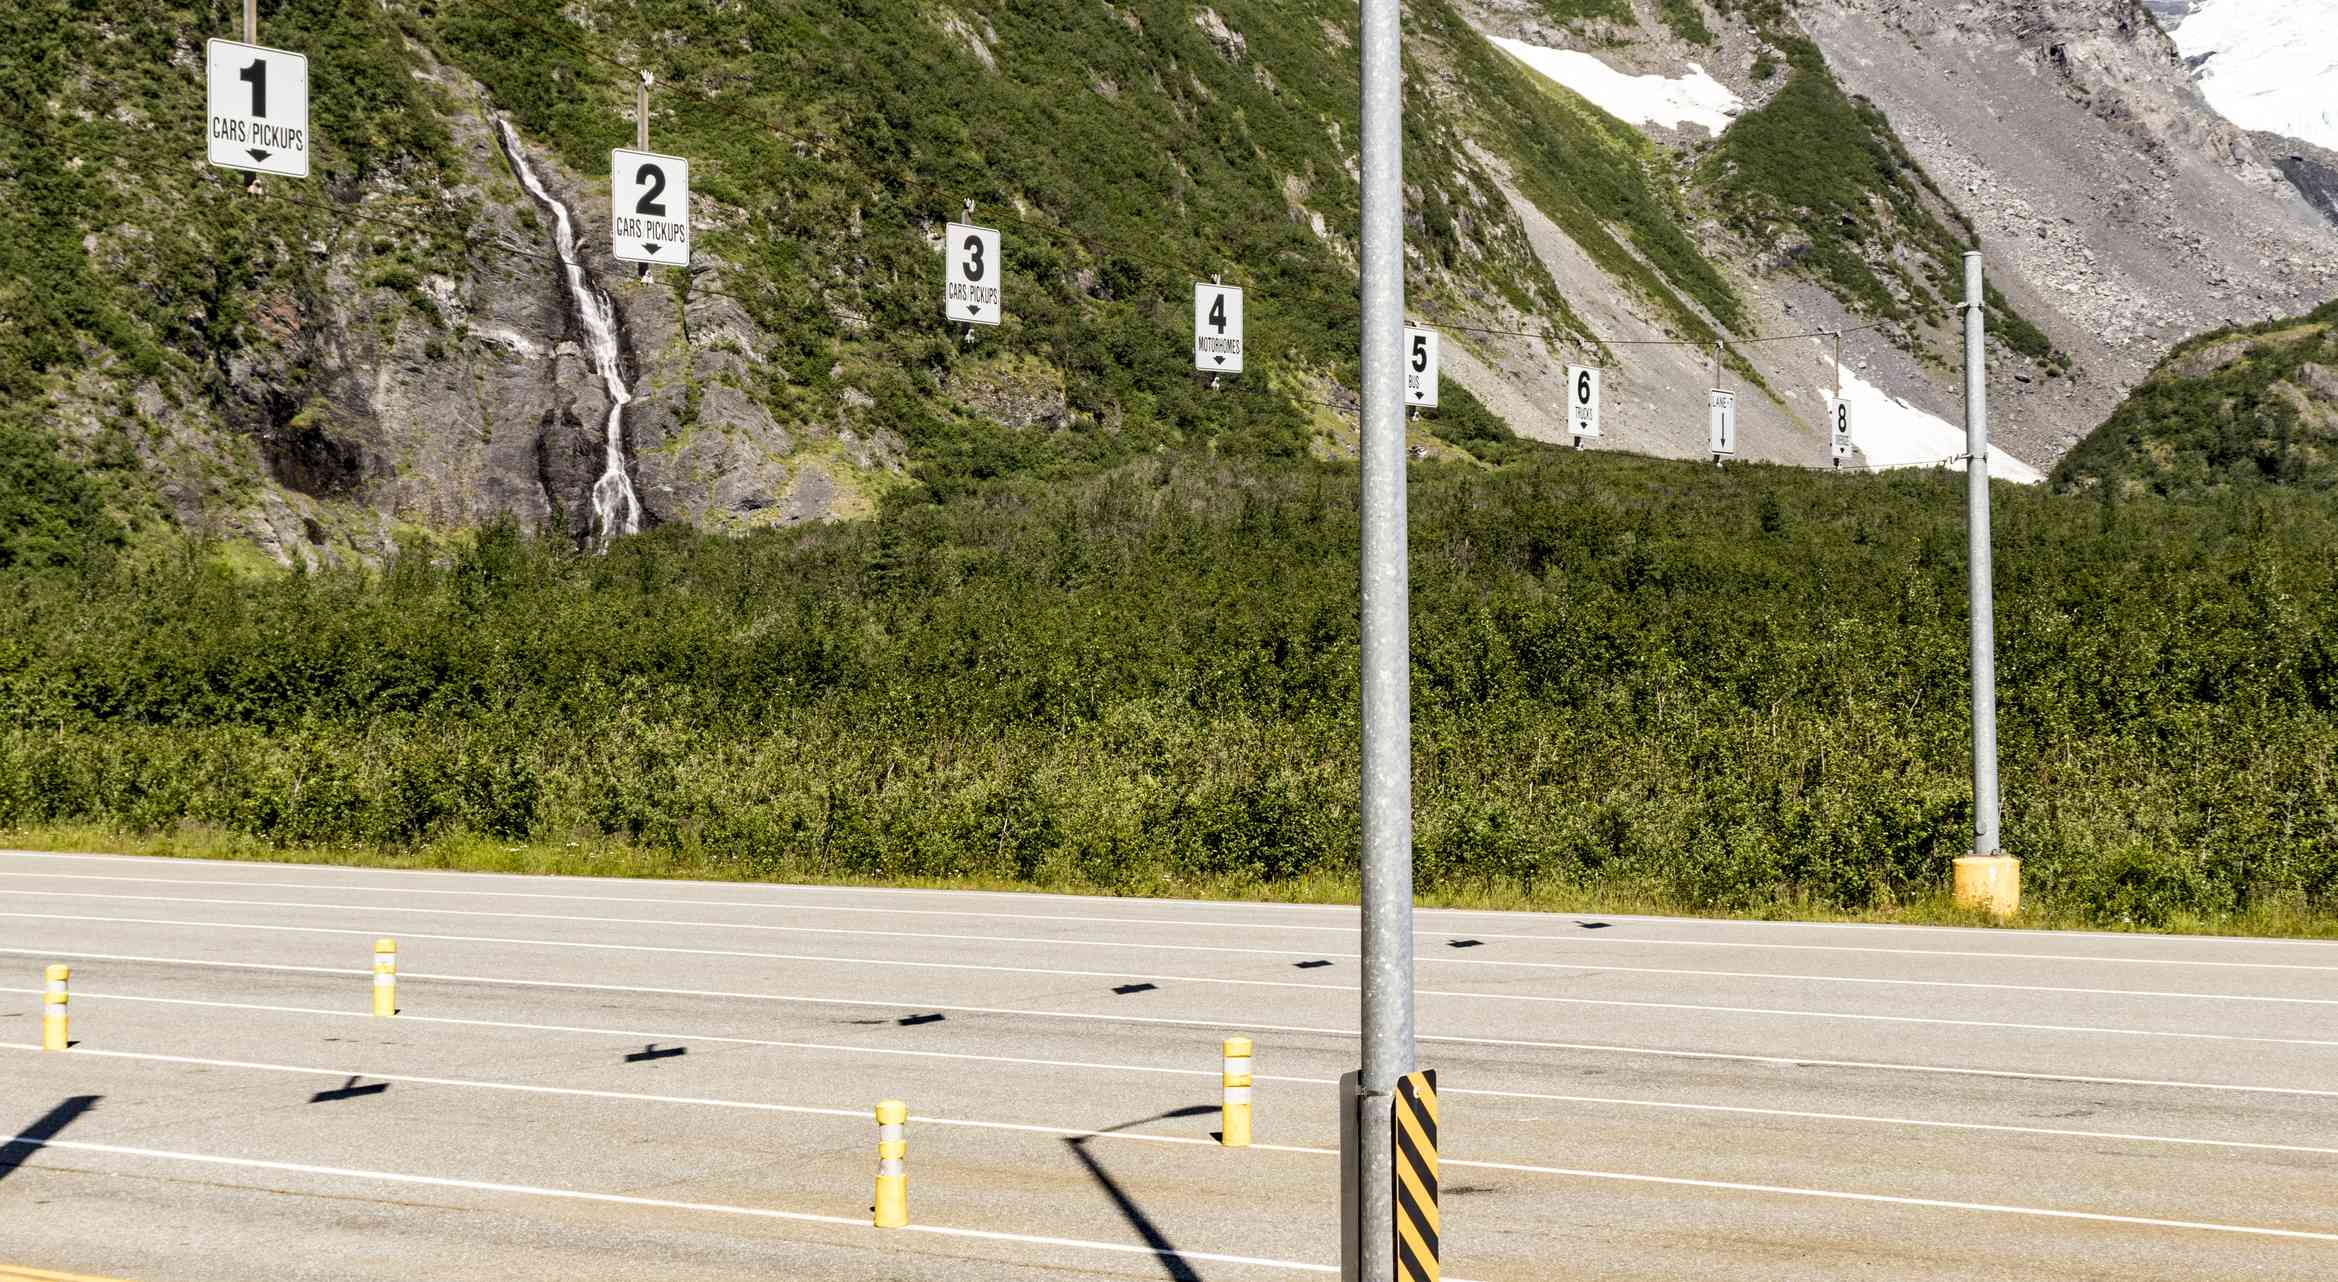 数字显示了阿拉斯加惠提尔隧道入口处的车道标记。